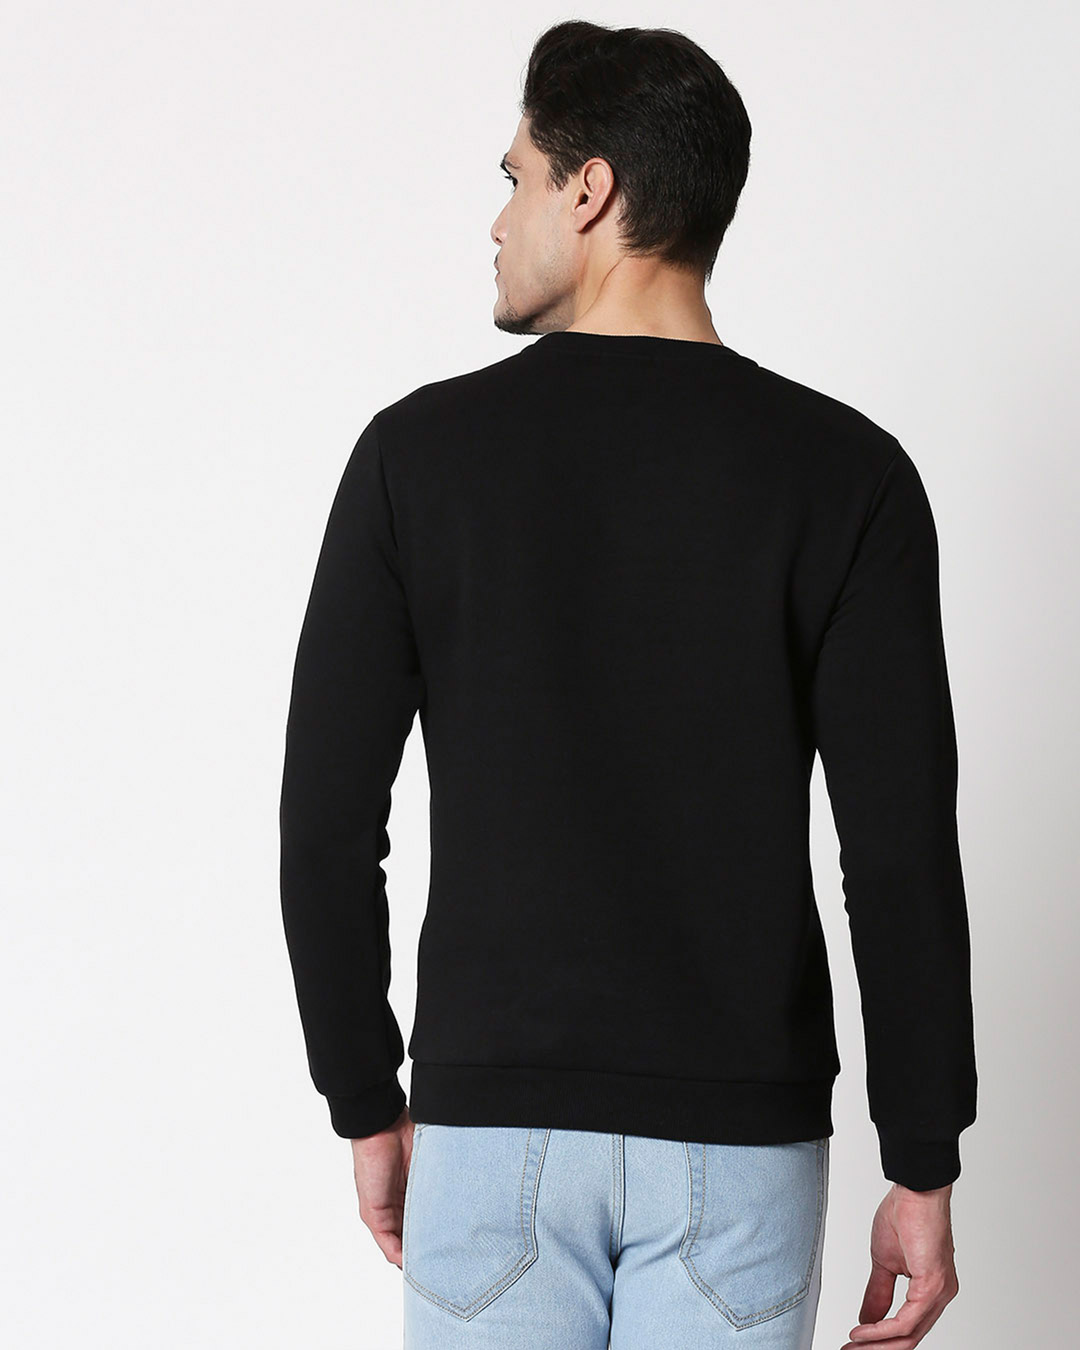 Shop Outdoors ON Fleece Sweatshirt Black-Back